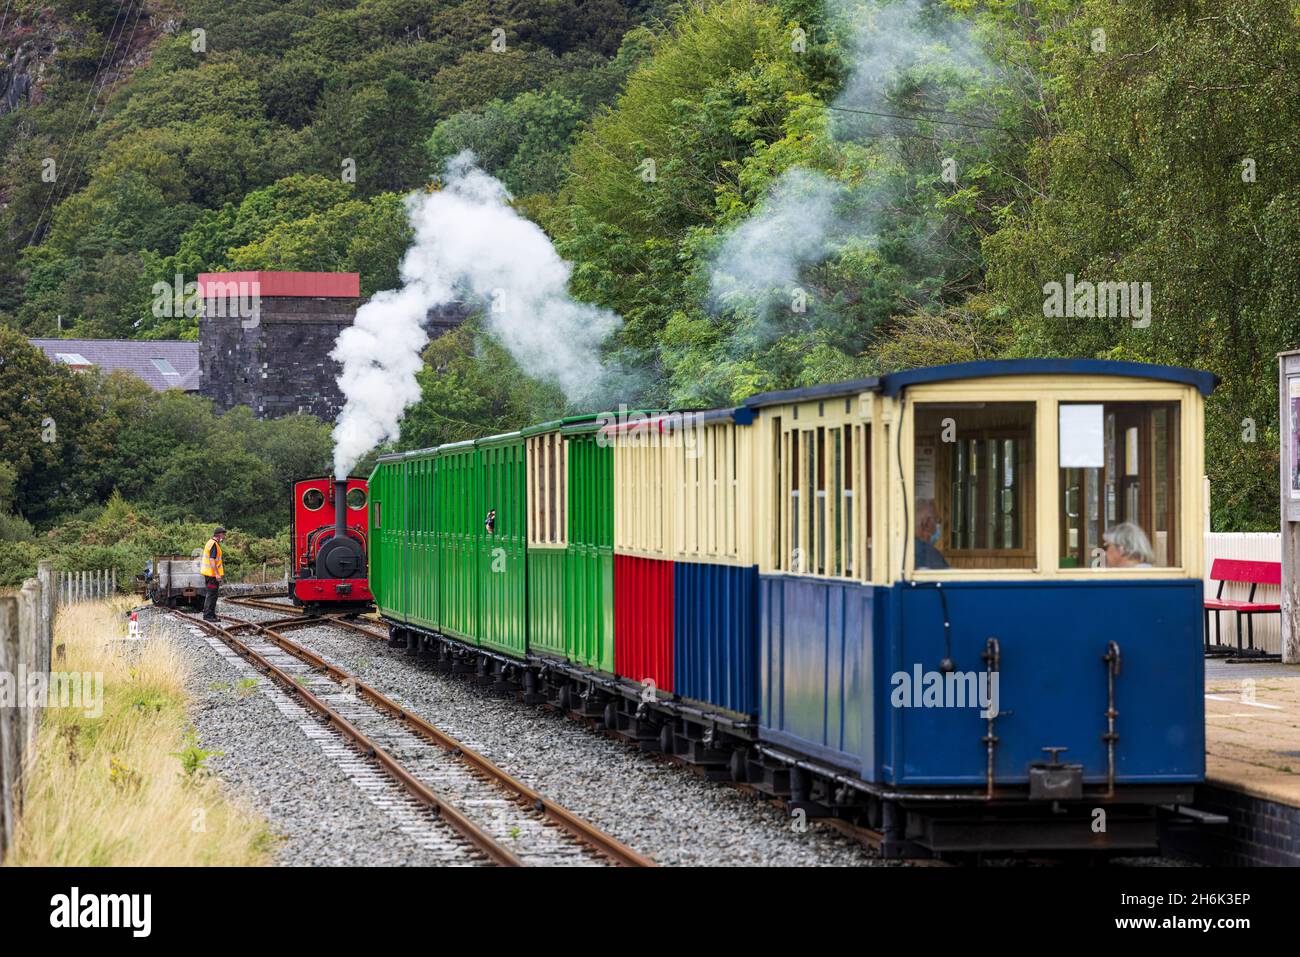 Tren de vapor que se introduce en la estación de ferrocarril del Lago Llanberis, inicio del pintoresco tren de vapor a orillas del lago rideLlanberis, Gales, Reino Unido, Foto de stock